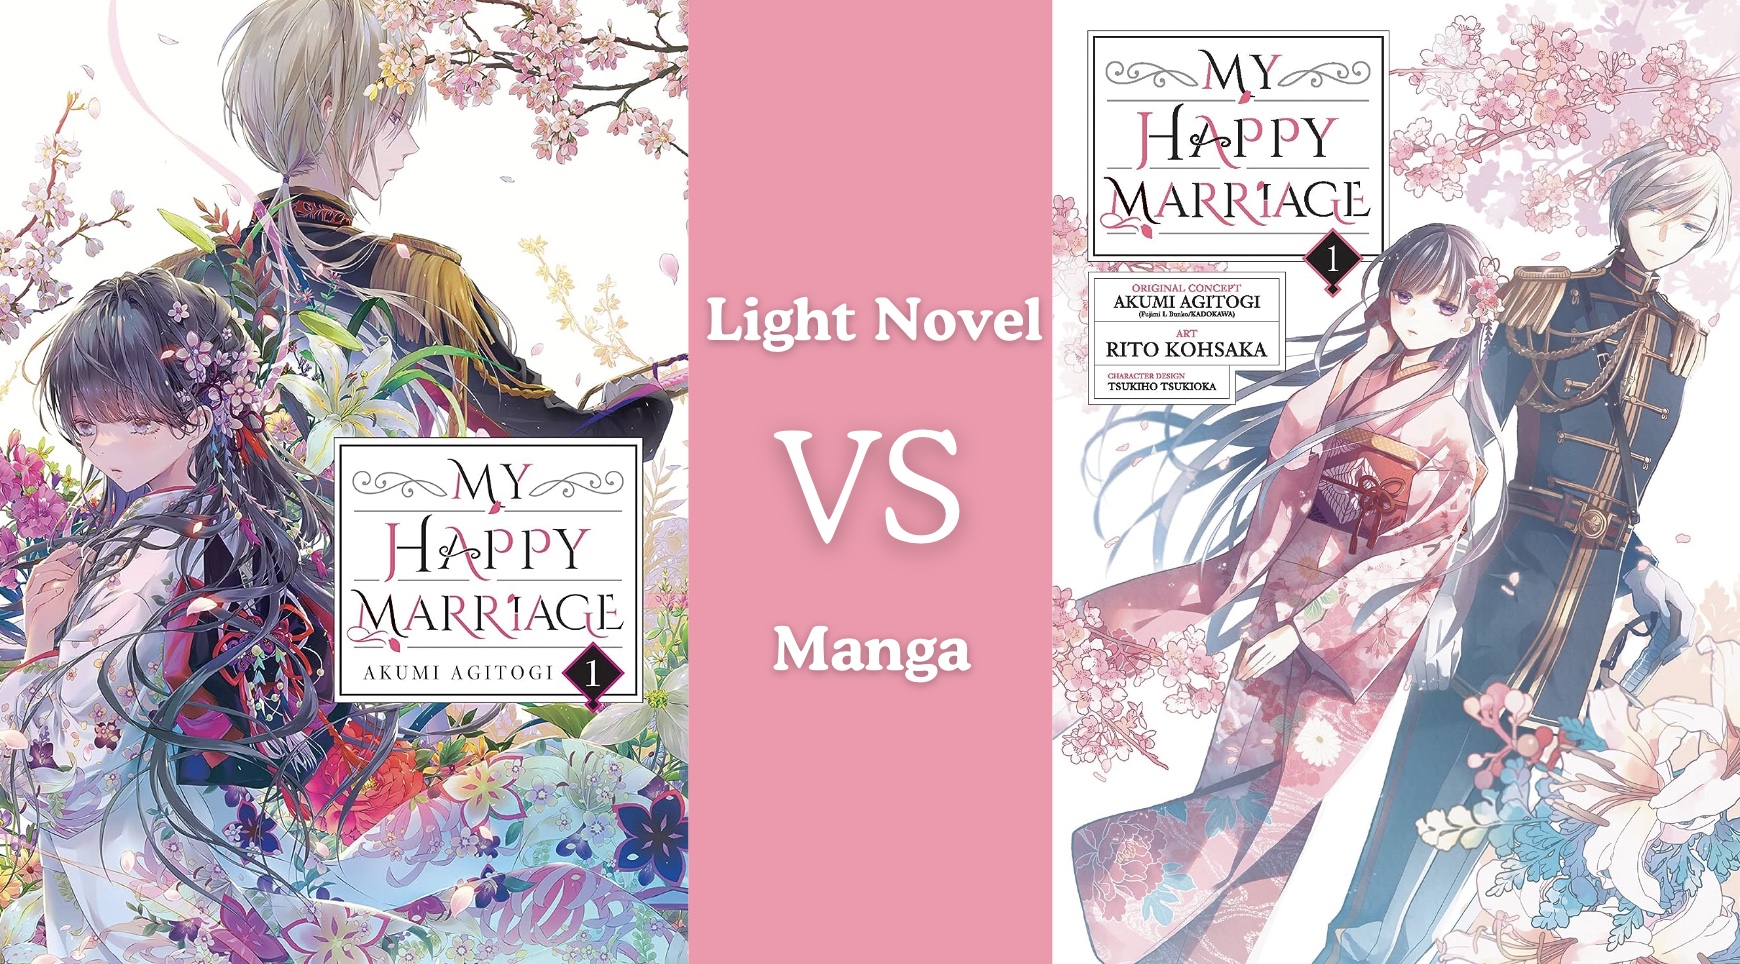 My Happy Marriage Light Novel vs. Manga